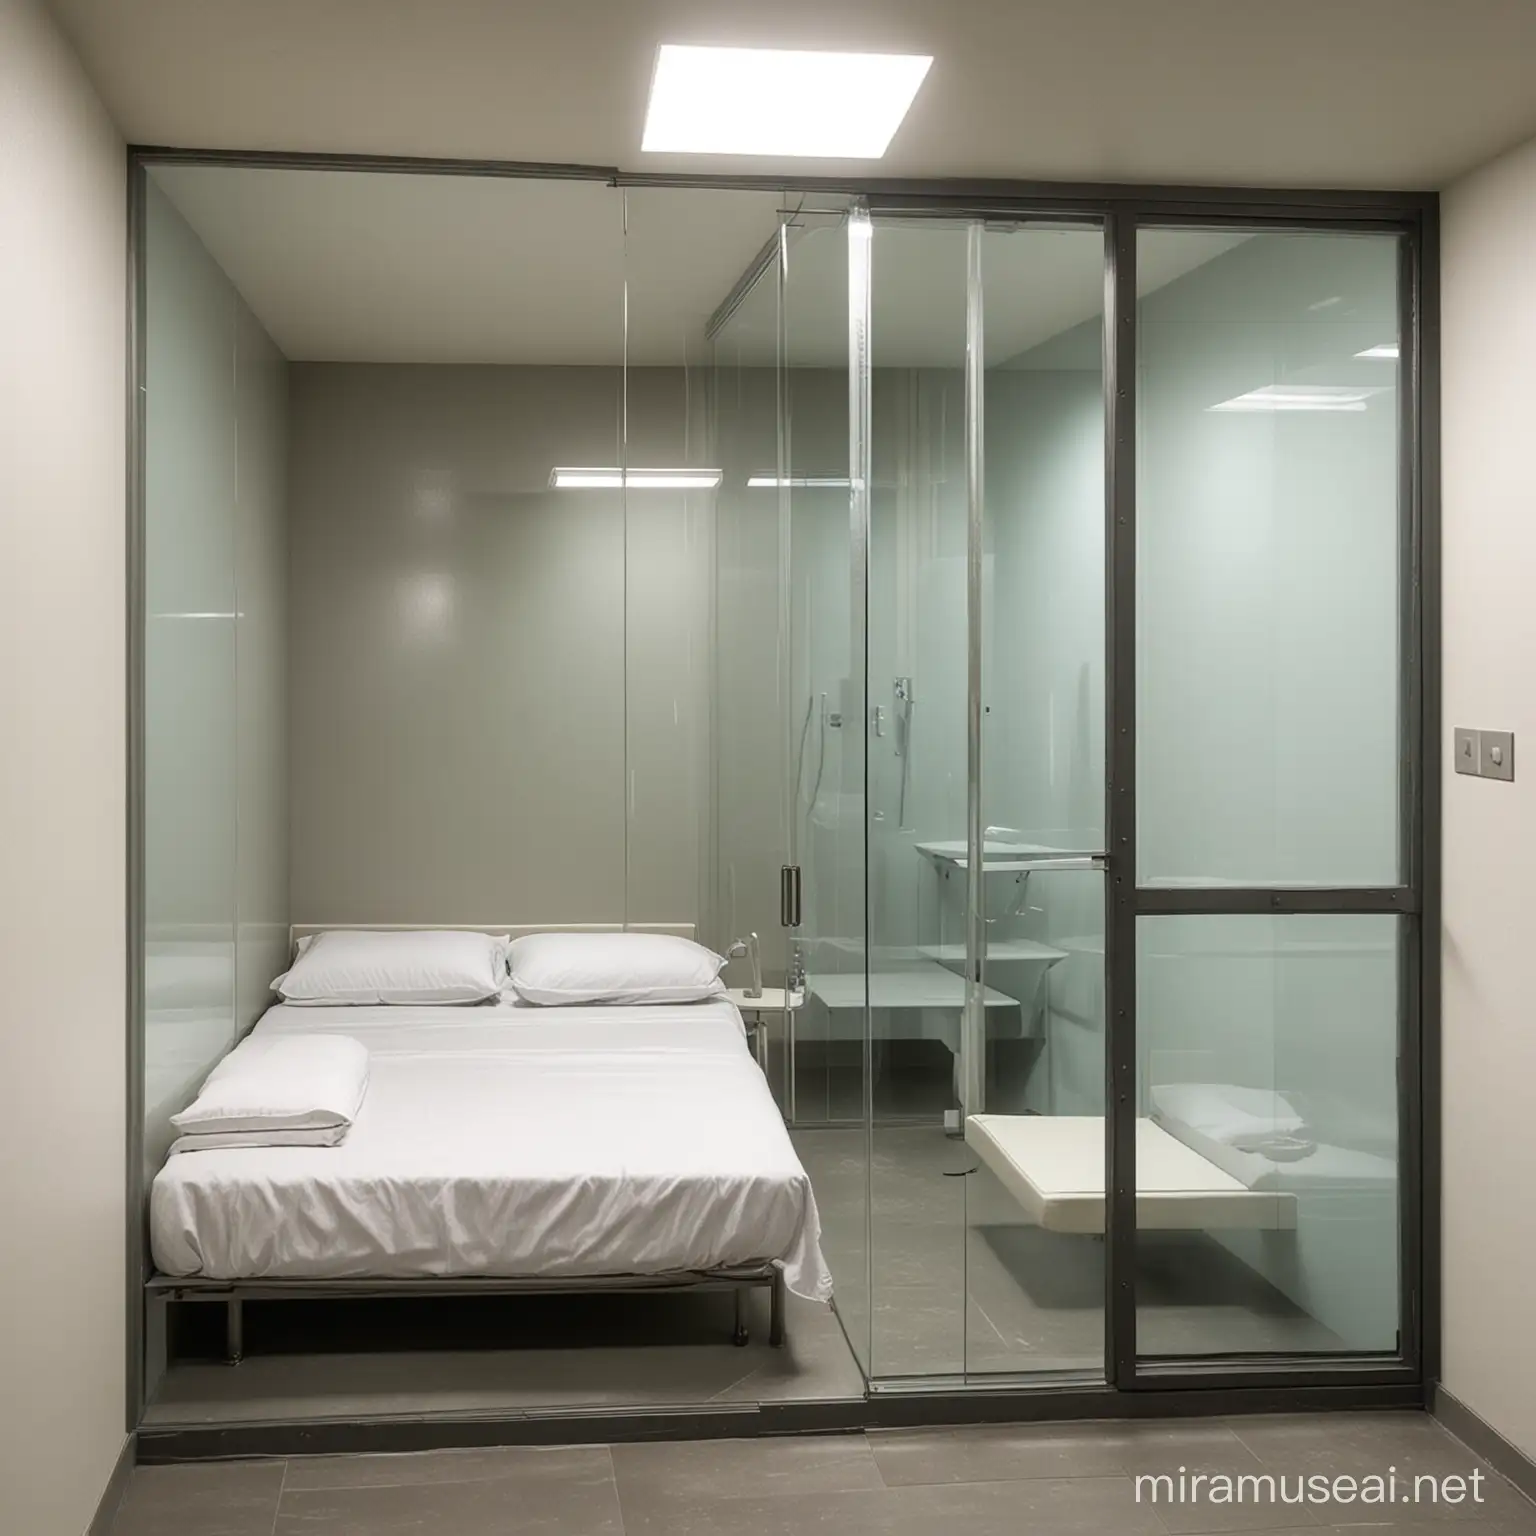 Una celda de prision con un muro de cristal rodeando la pared con una cama dentro de ella